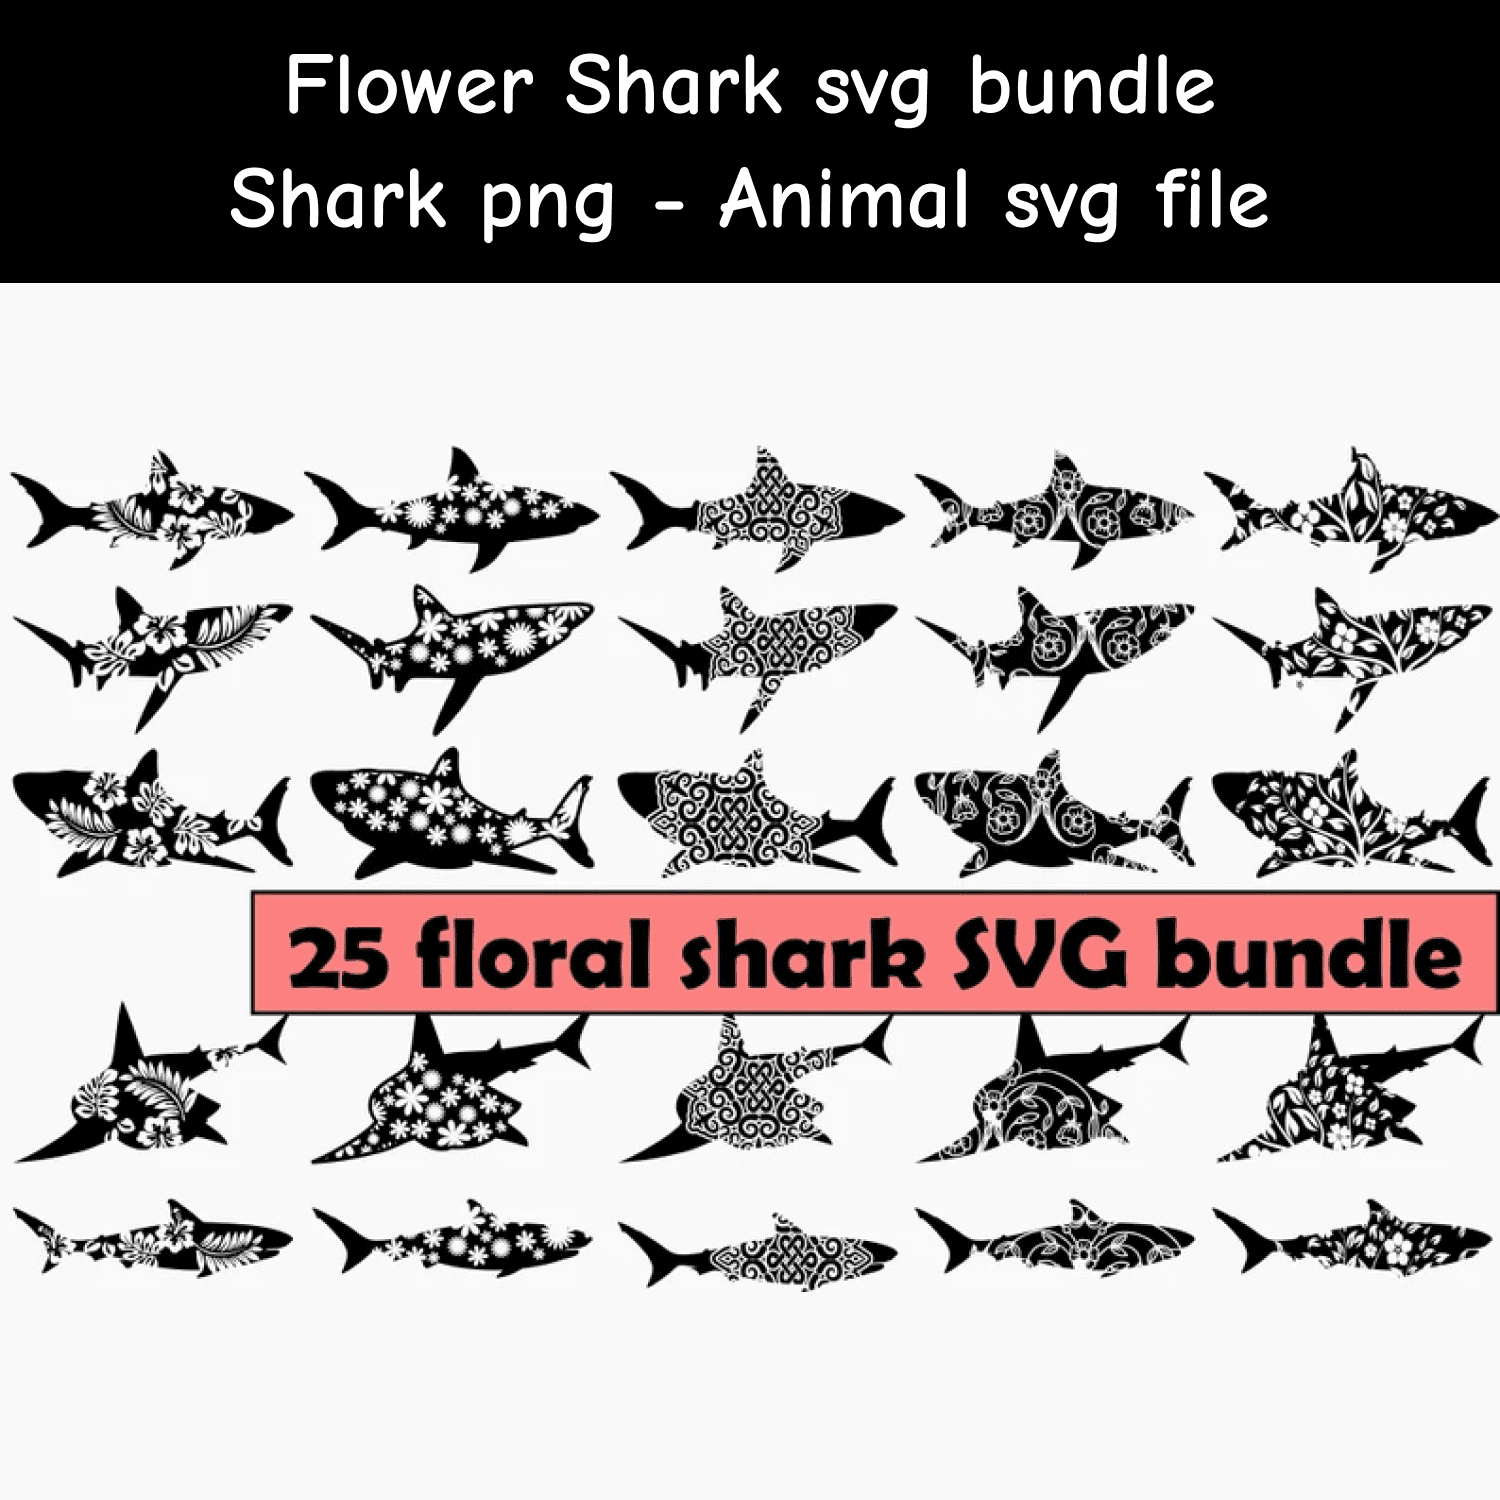 Floral shark svg bundle.